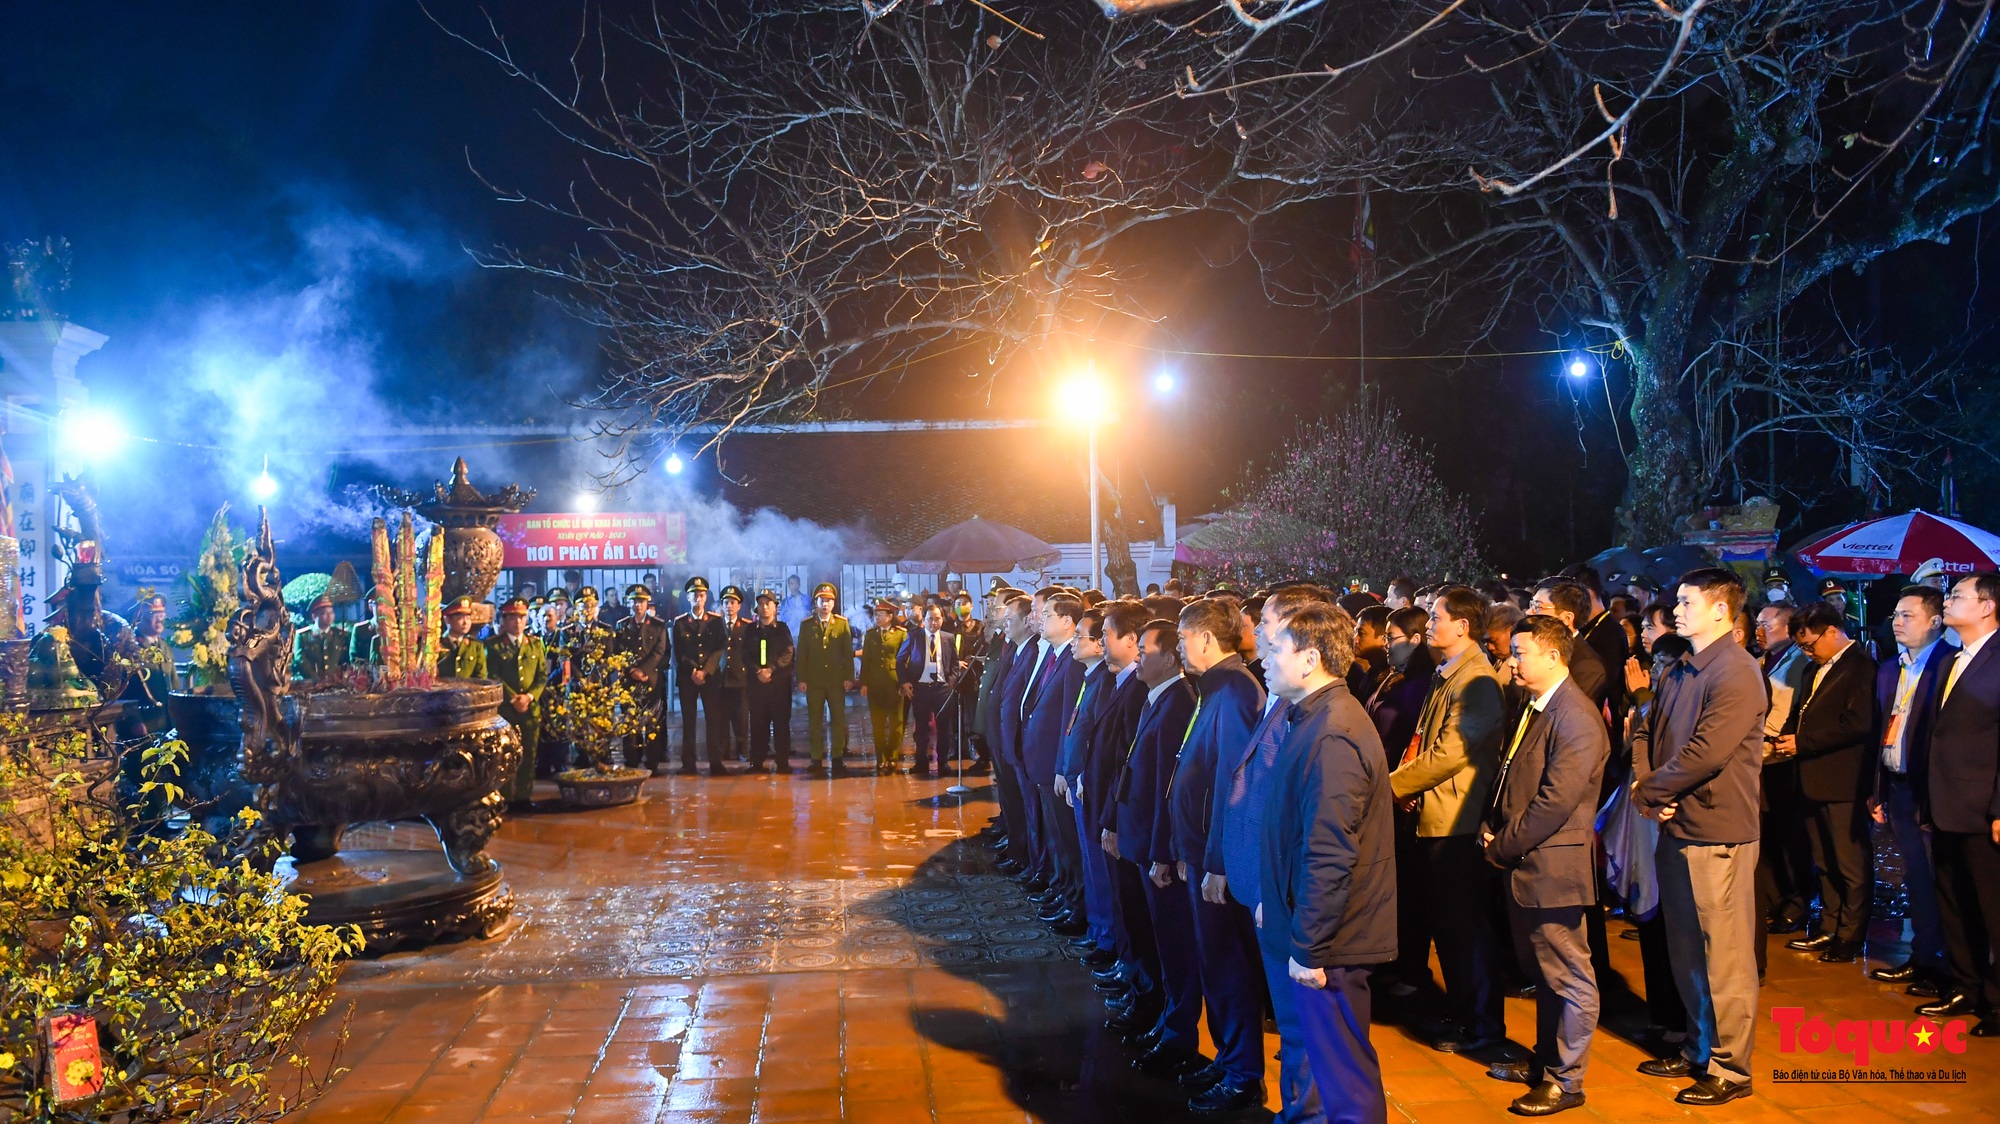 Hàng ngàn người đổ về dự lễ khai ấn đền Trần diễn ra vào lúc nửa đêm ở Nam Định - Ảnh 2.